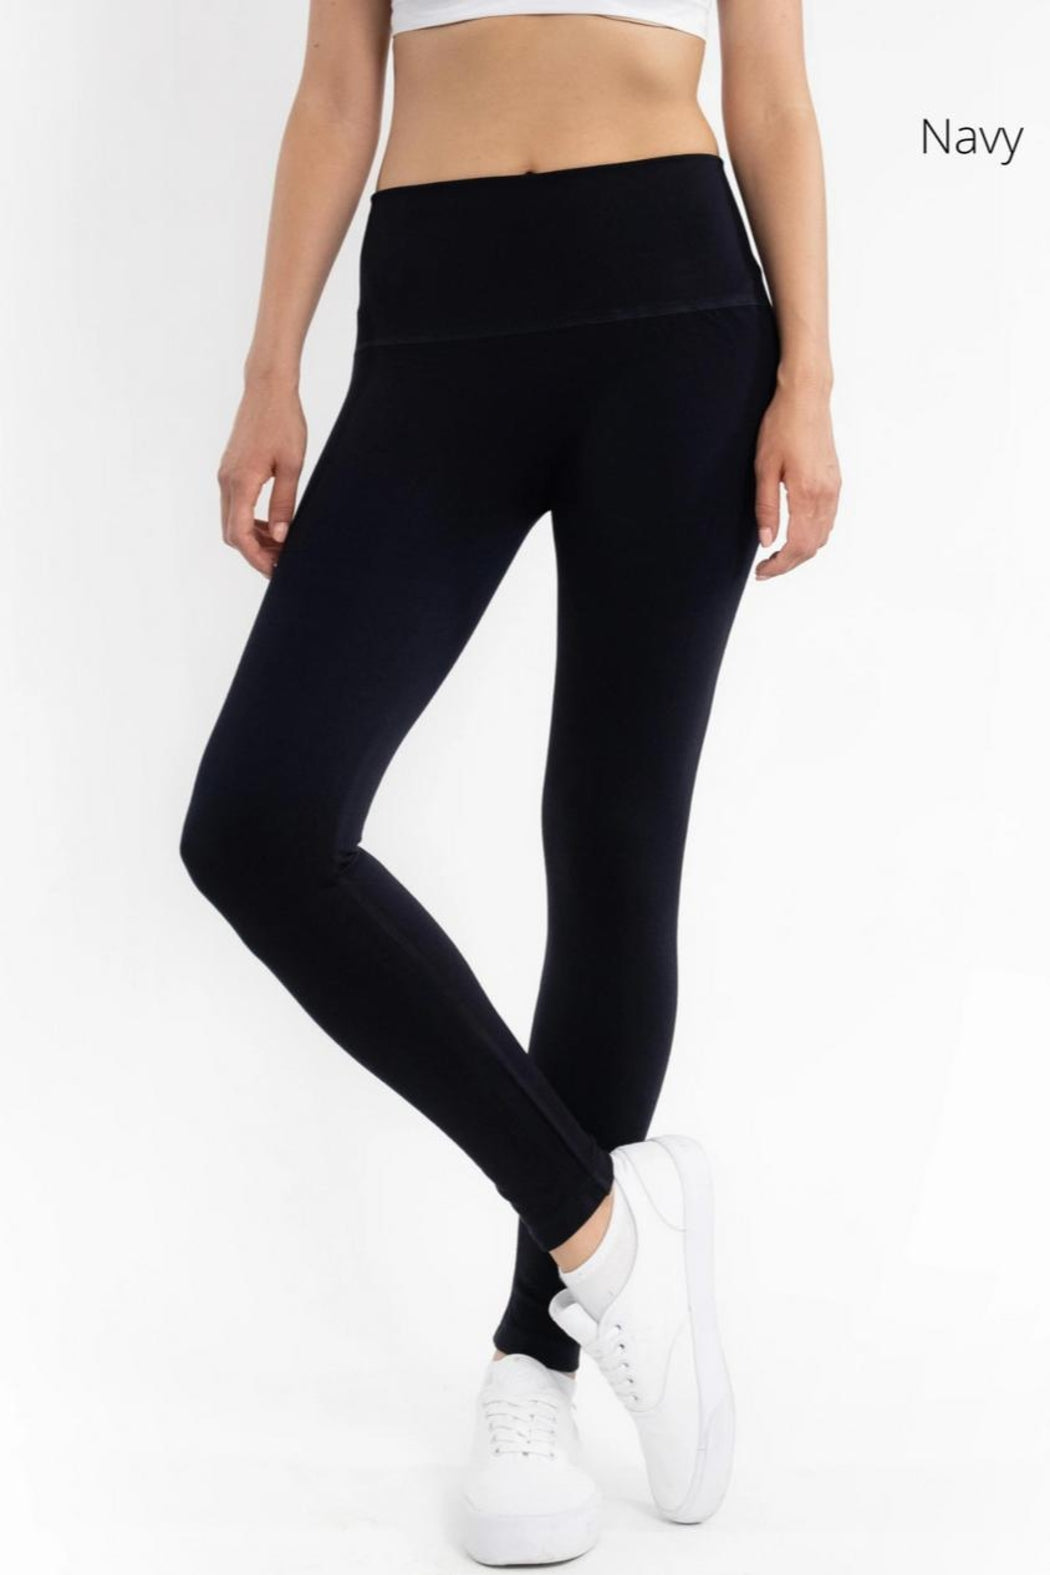 Black Plus Size Fleece Lined Leggings – Shoptiques